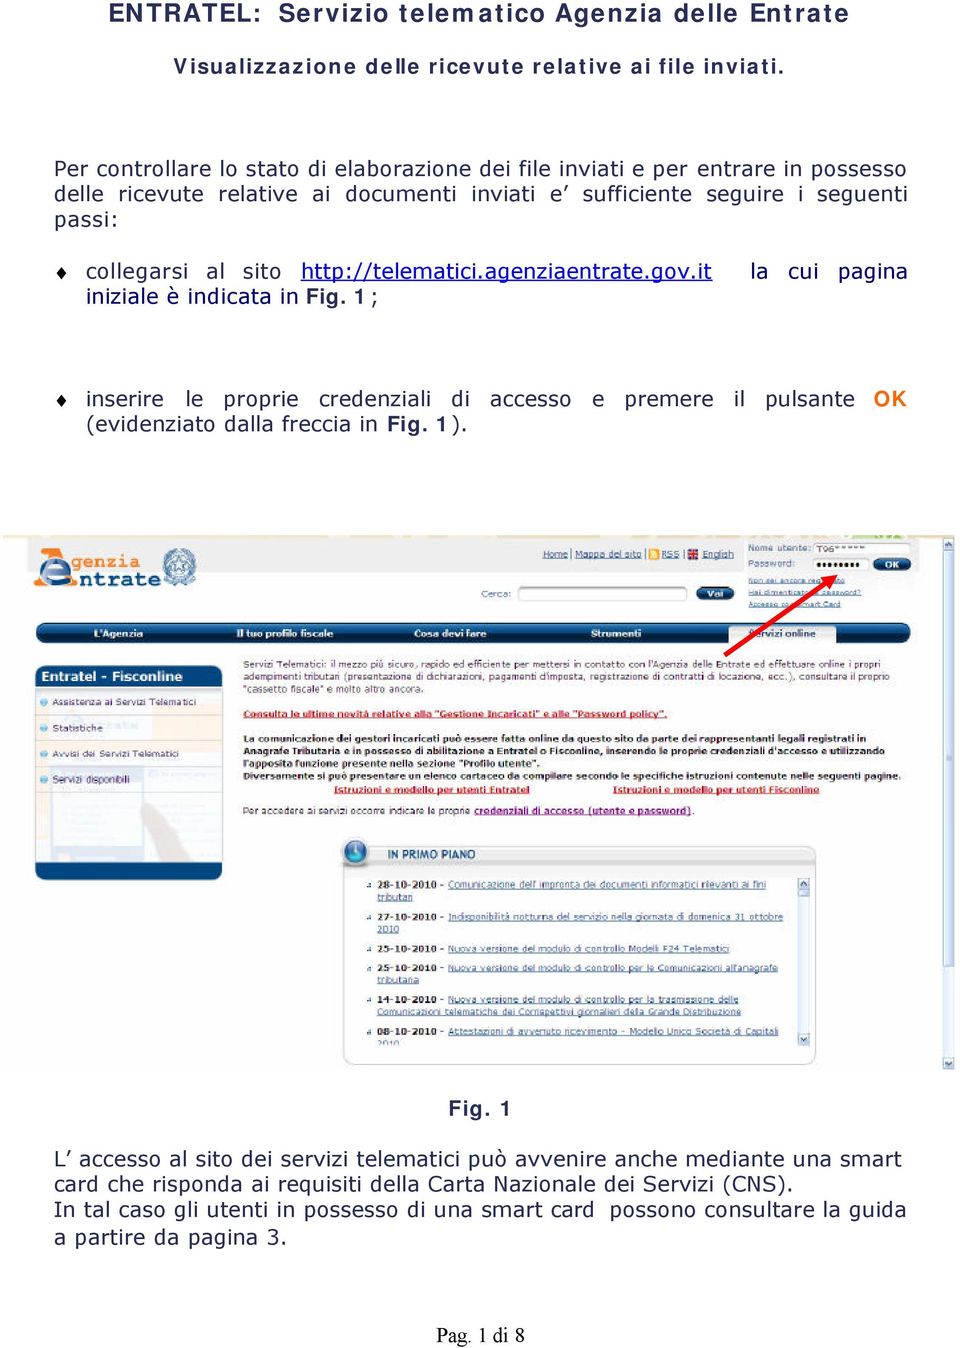 http://telematici.agenziaentrate.gov.it iniziale è indicata in Fig. 1; la cui pagina inserire le proprie credenziali di accesso e premere il pulsante OK (evidenziato dalla freccia in Fig. 1).